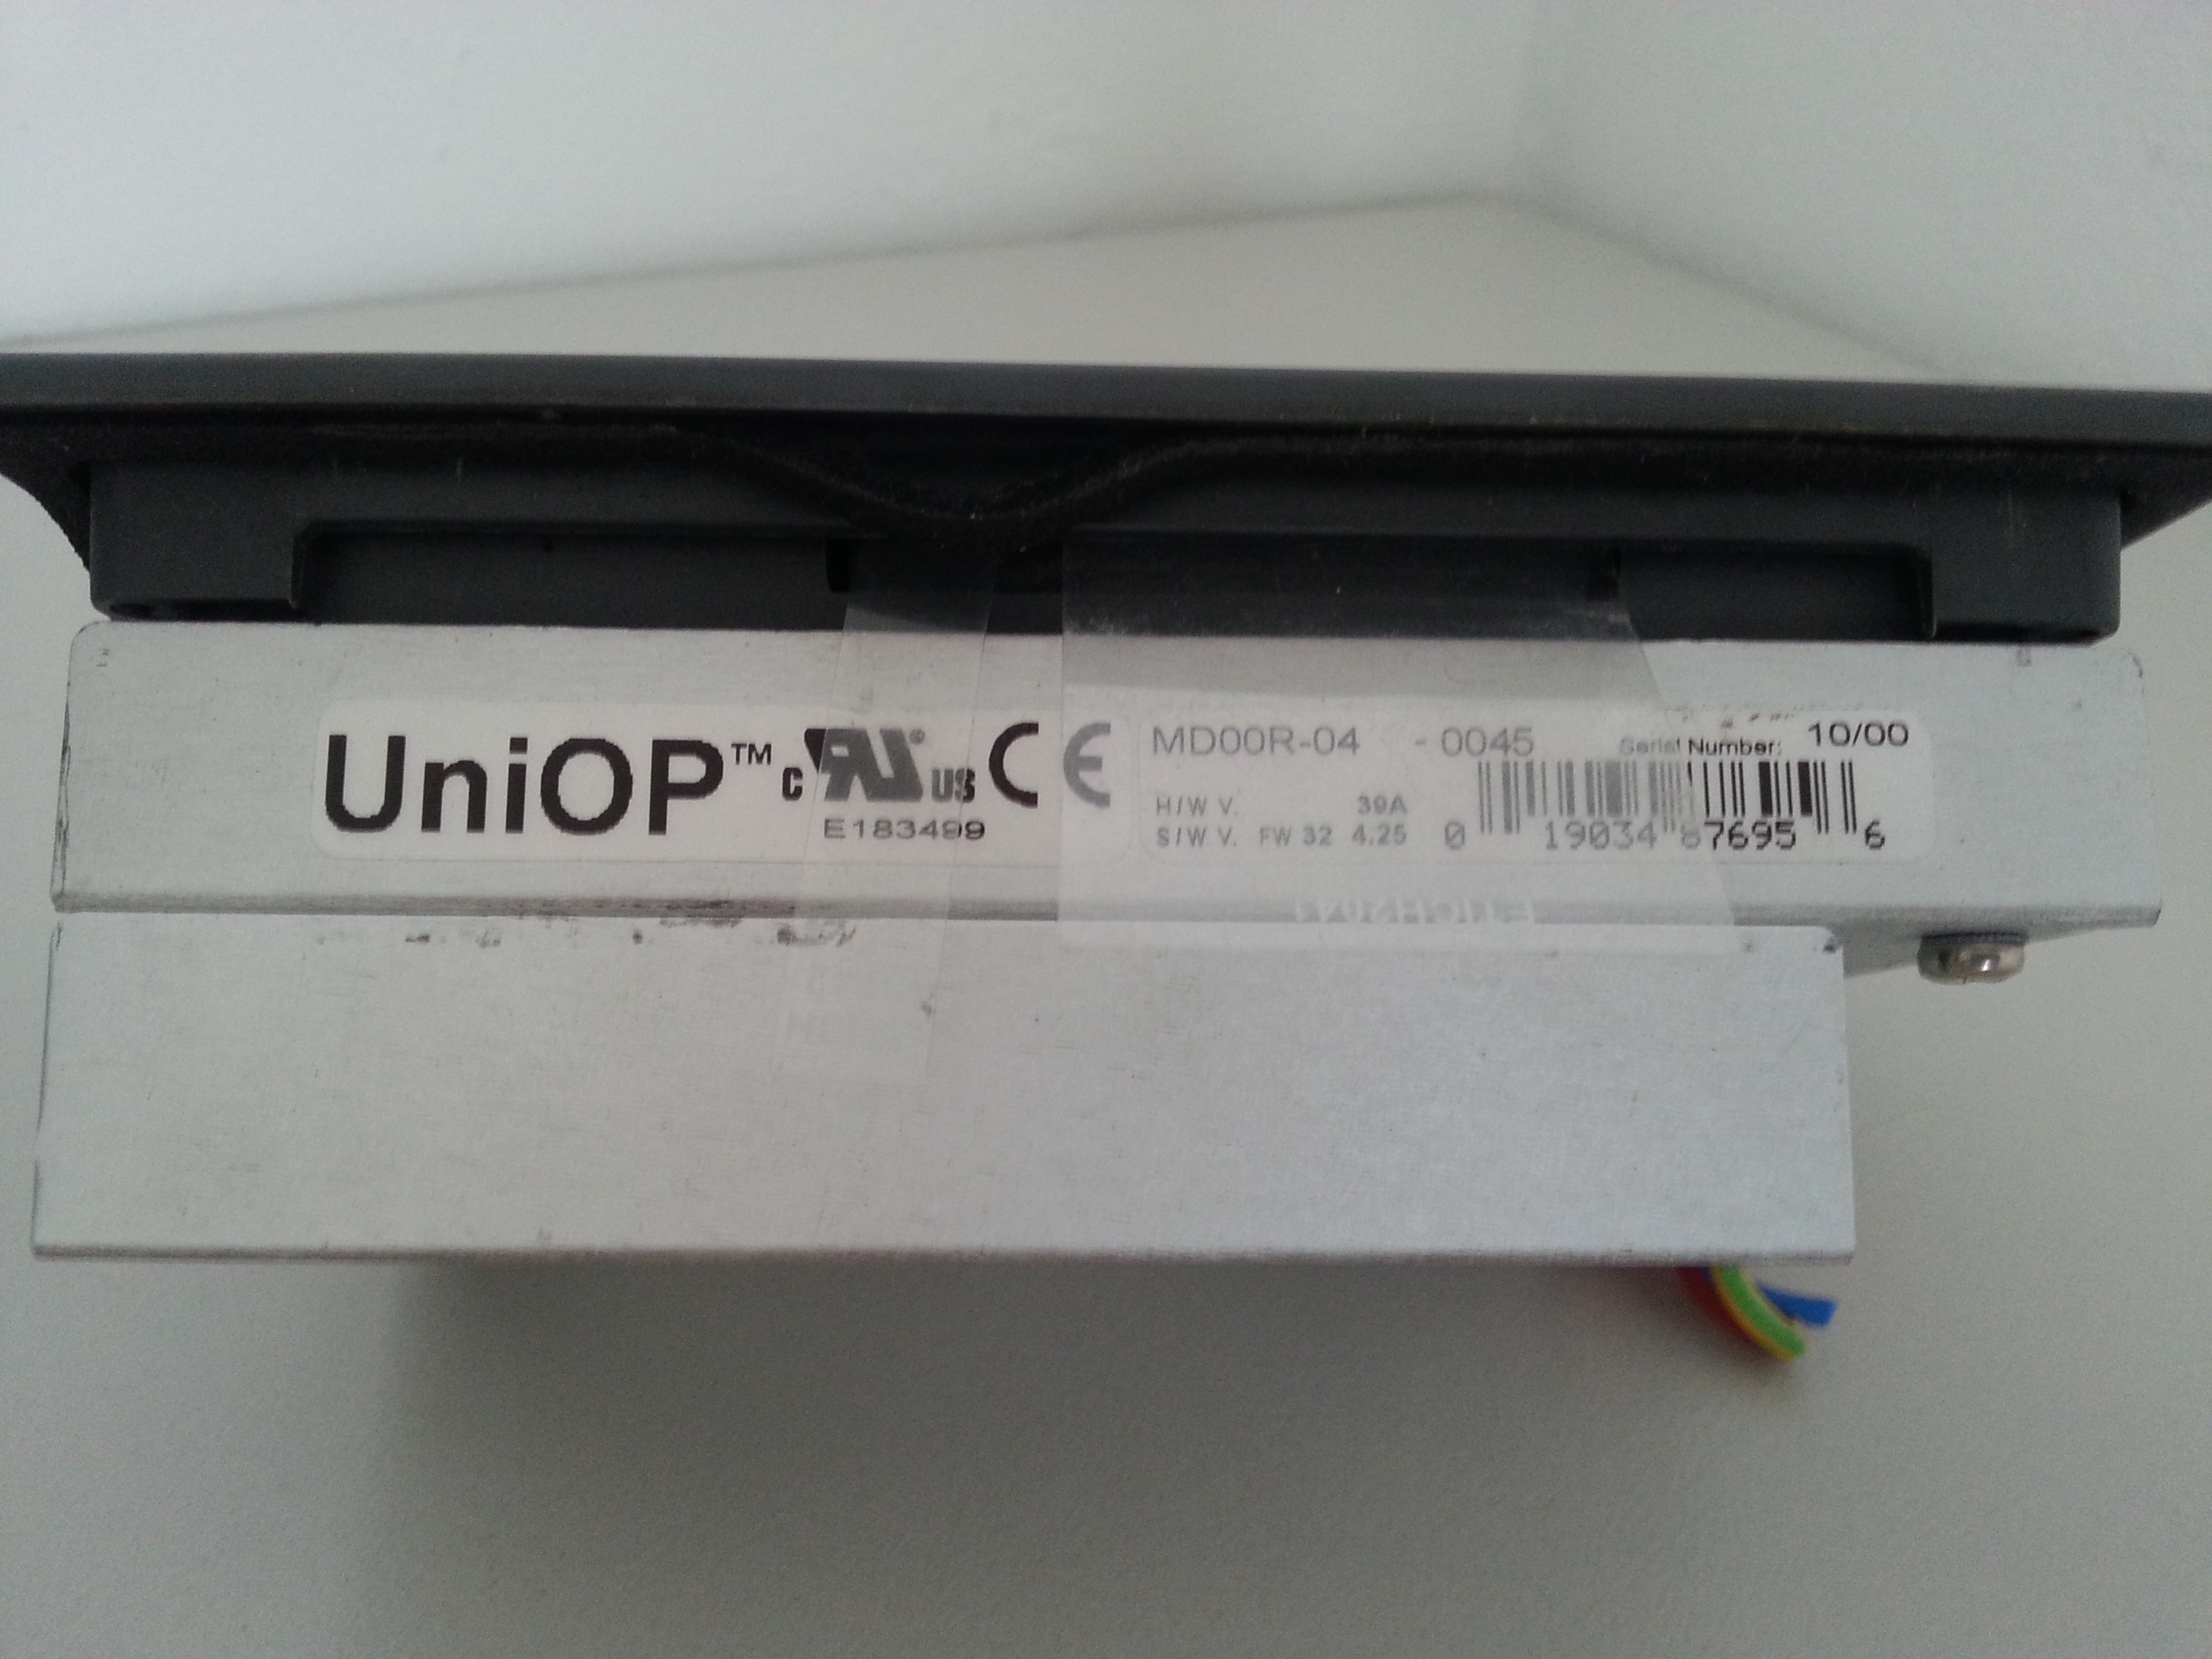 MD00R-04-0045 exor Uniop HMI panel